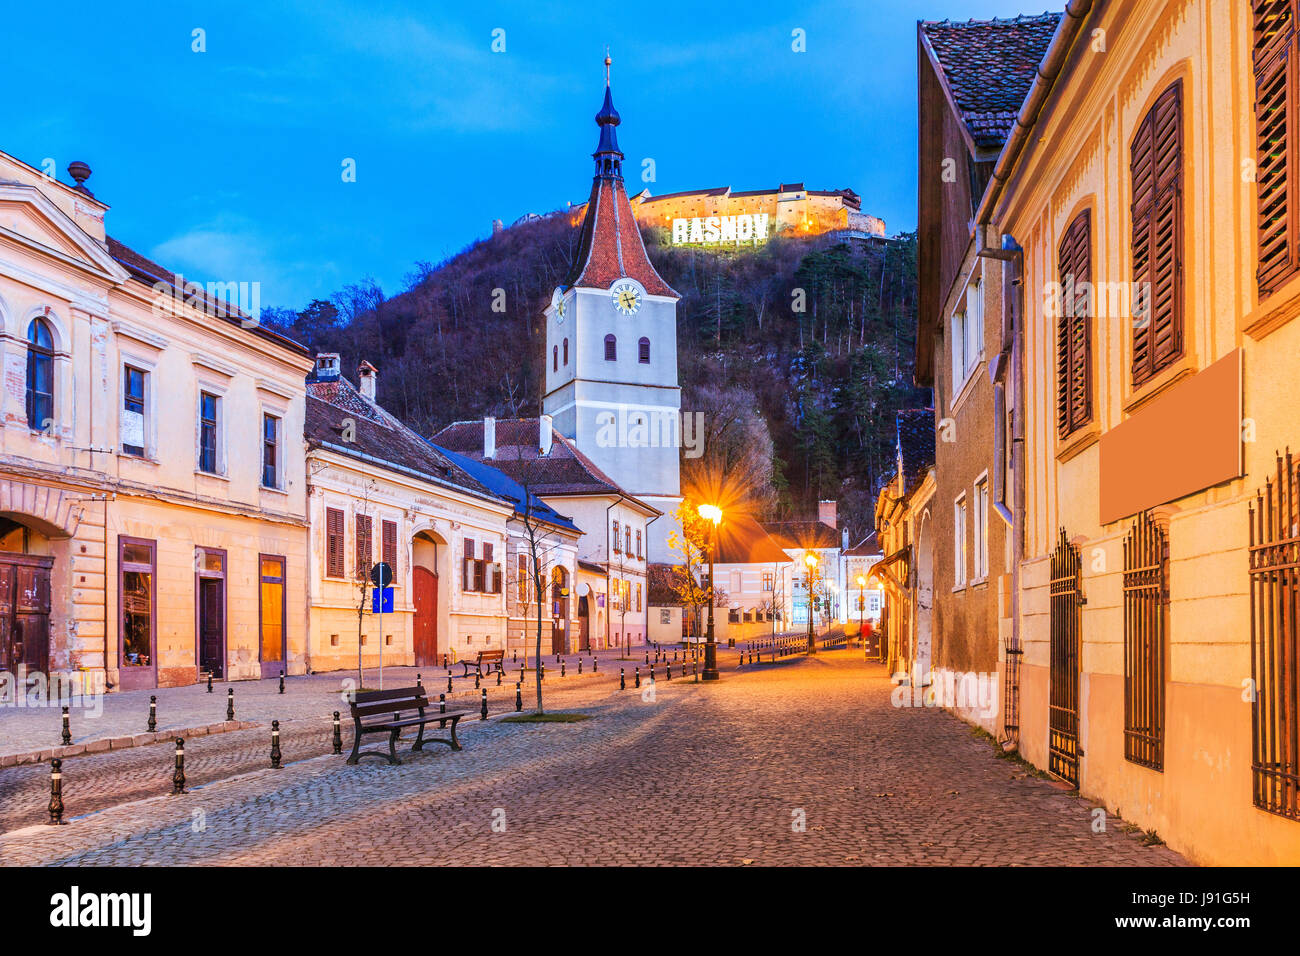 Rosenau, Rumänien. Mittelalterliche sächsische Stadt in Siebenbürgen und Hügel Ruinen der Festung. Stockfoto